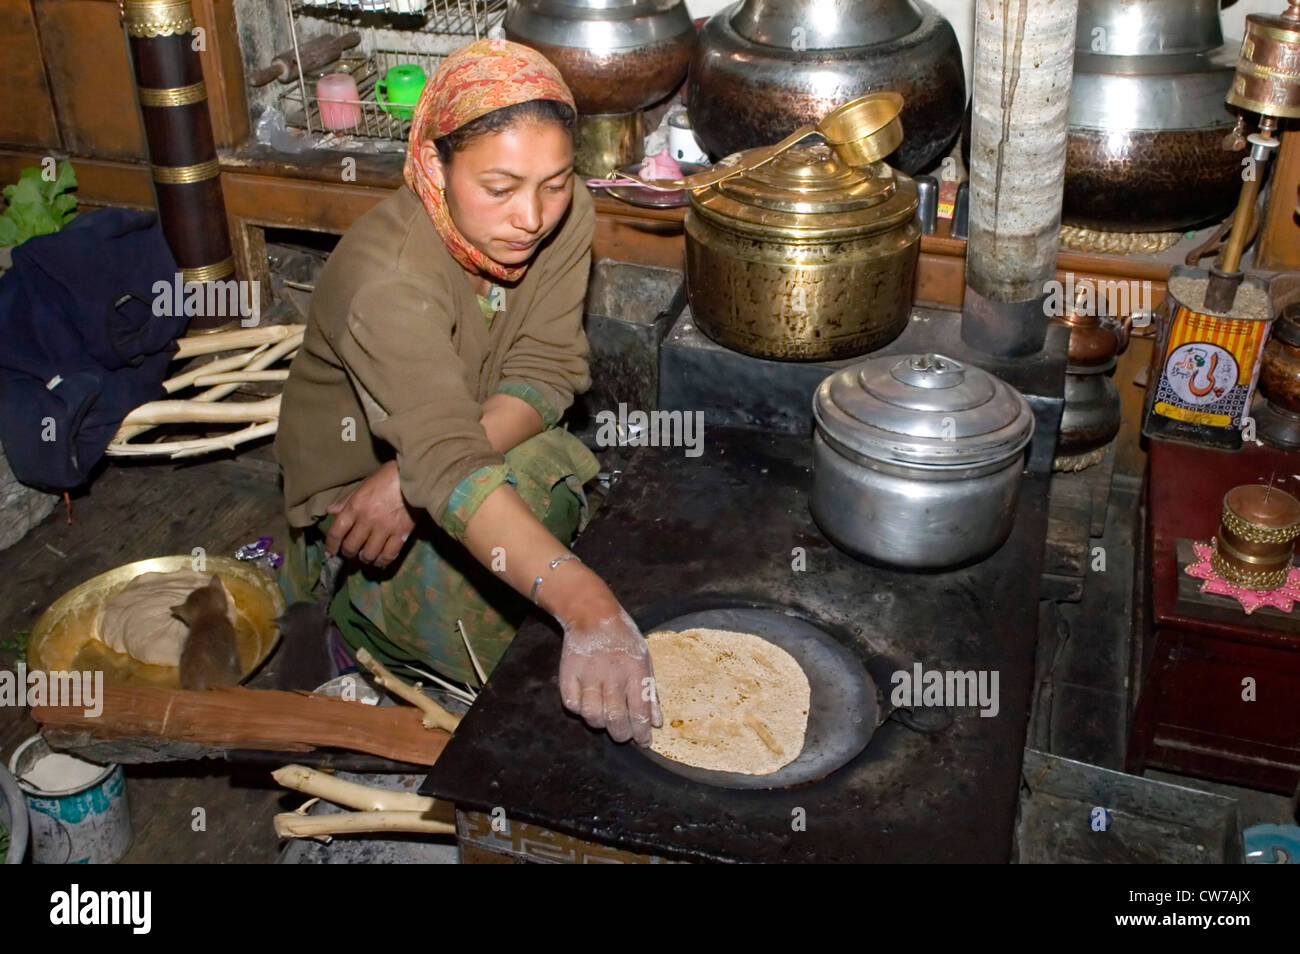 Frau in der Küche, Nurla, Indus Senke, Indien, Ladakh Chapatis Backen Stockfoto